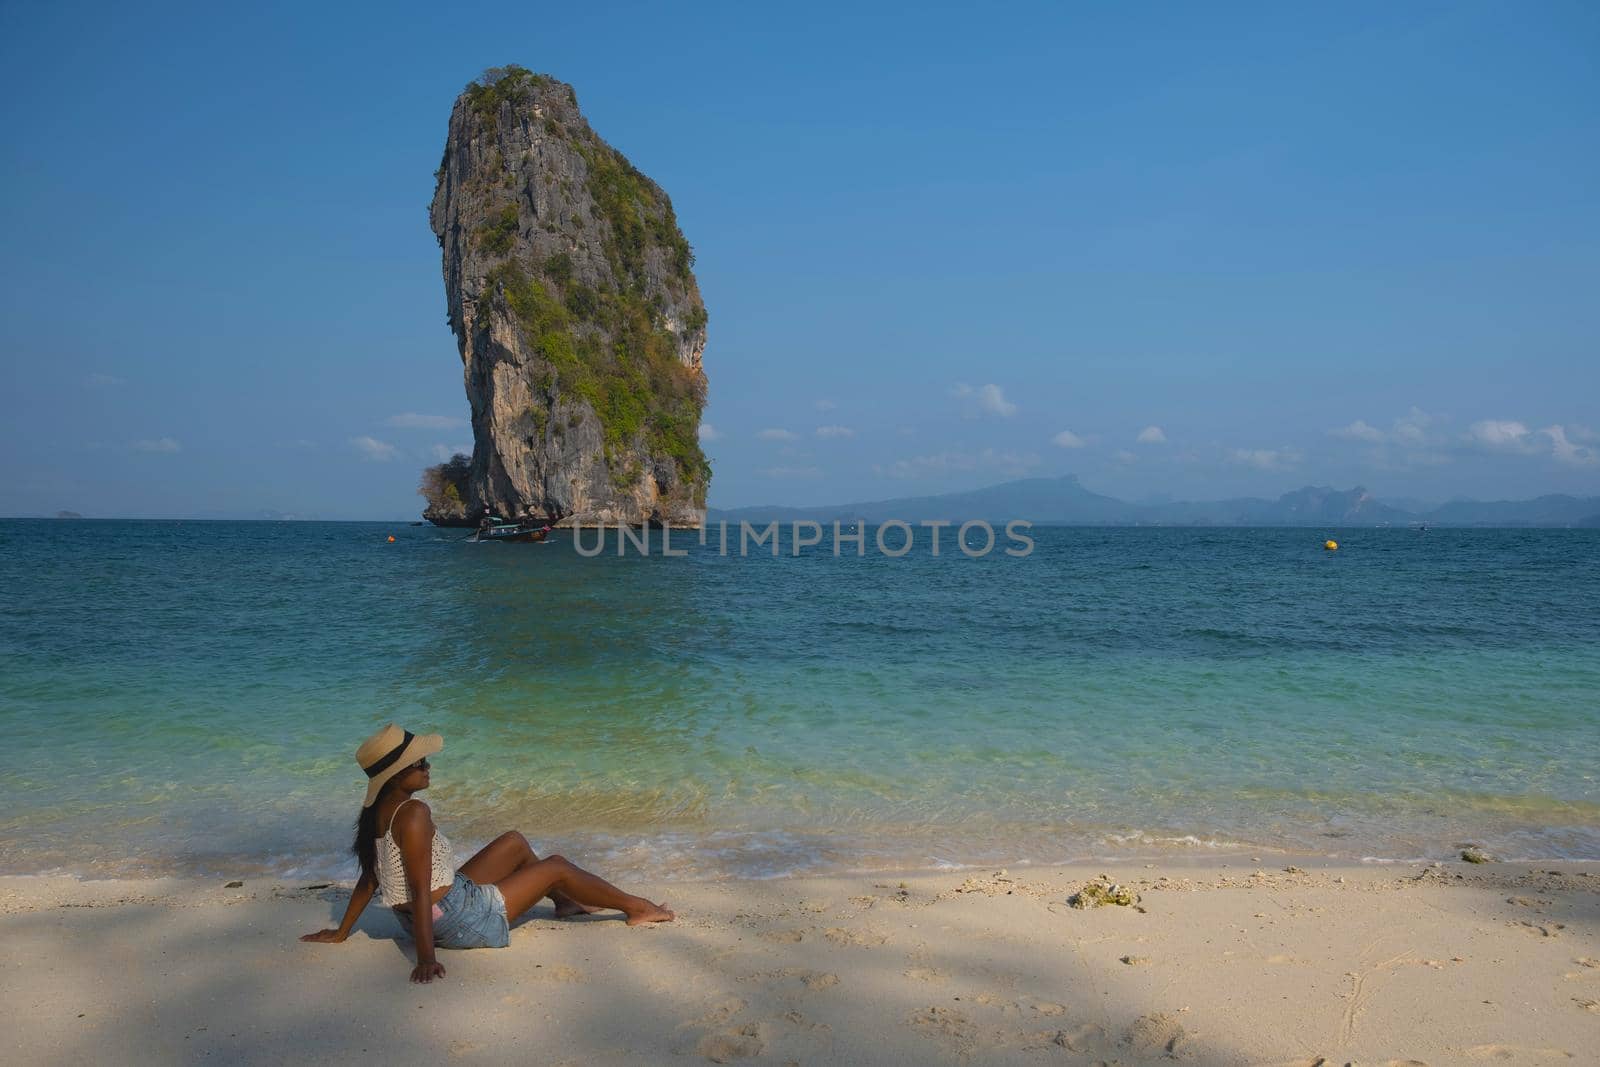 Koh Poda Island Thailand, Asian woman on the beach, Koh Poda Thailand, beautiful tropical beach of Koh Poda, Poda Island in Krabi province of Thailand South East Asian